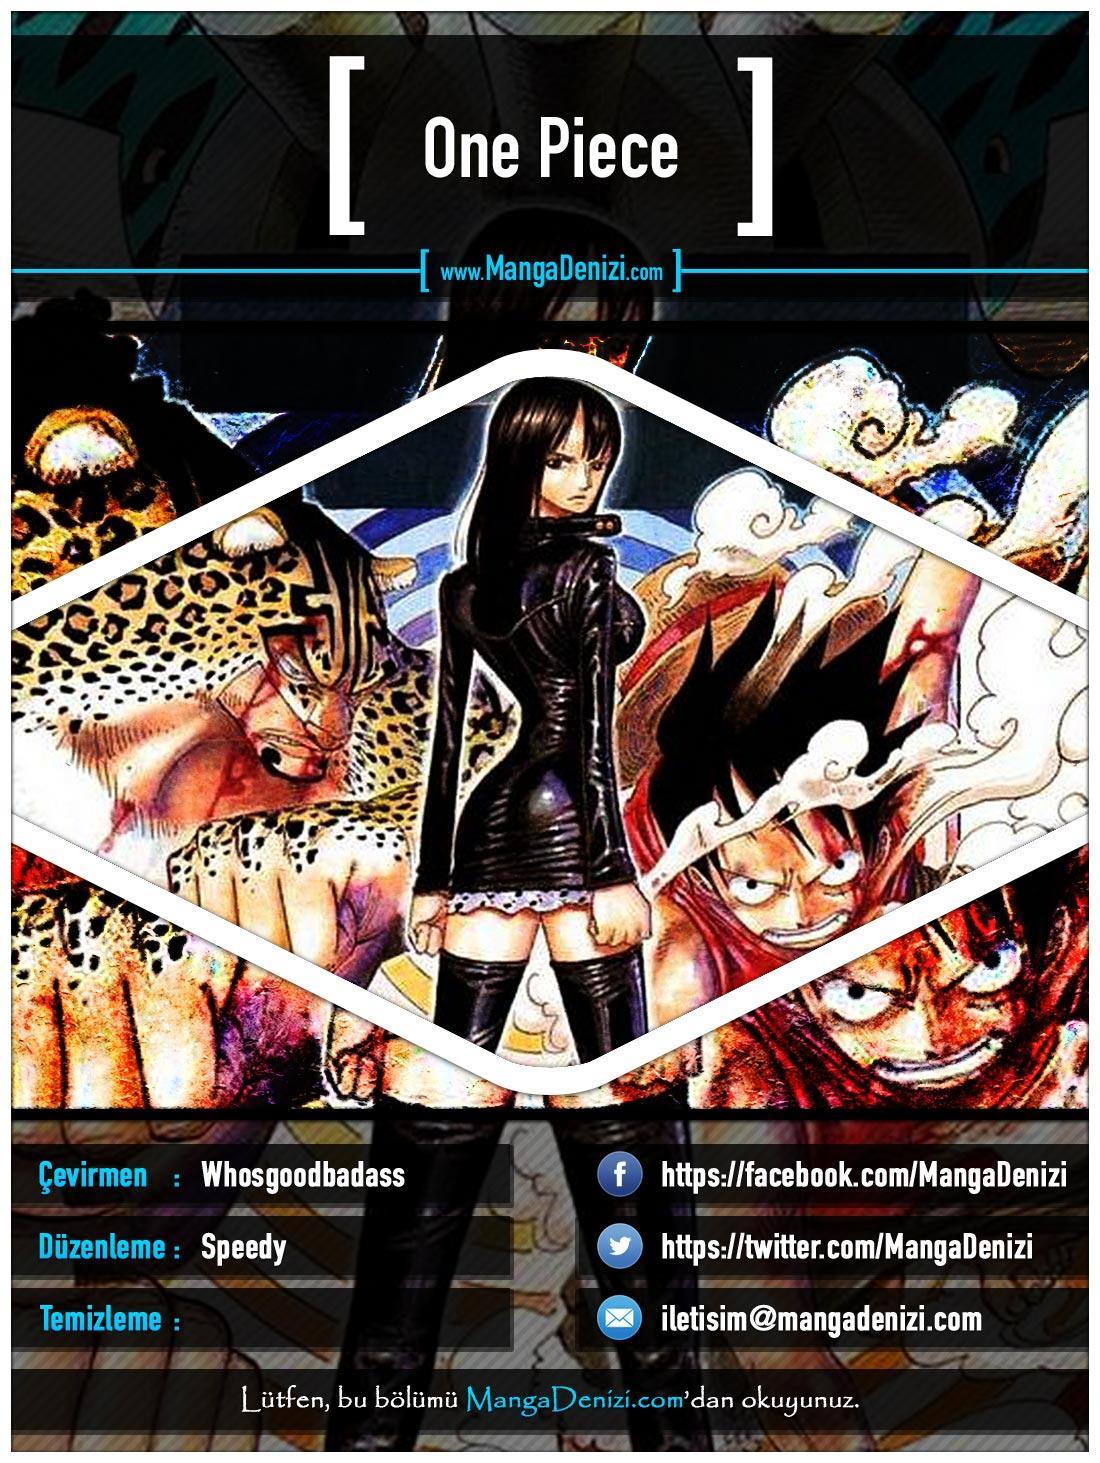 One Piece [Renkli] mangasının 0421 bölümünün 1. sayfasını okuyorsunuz.